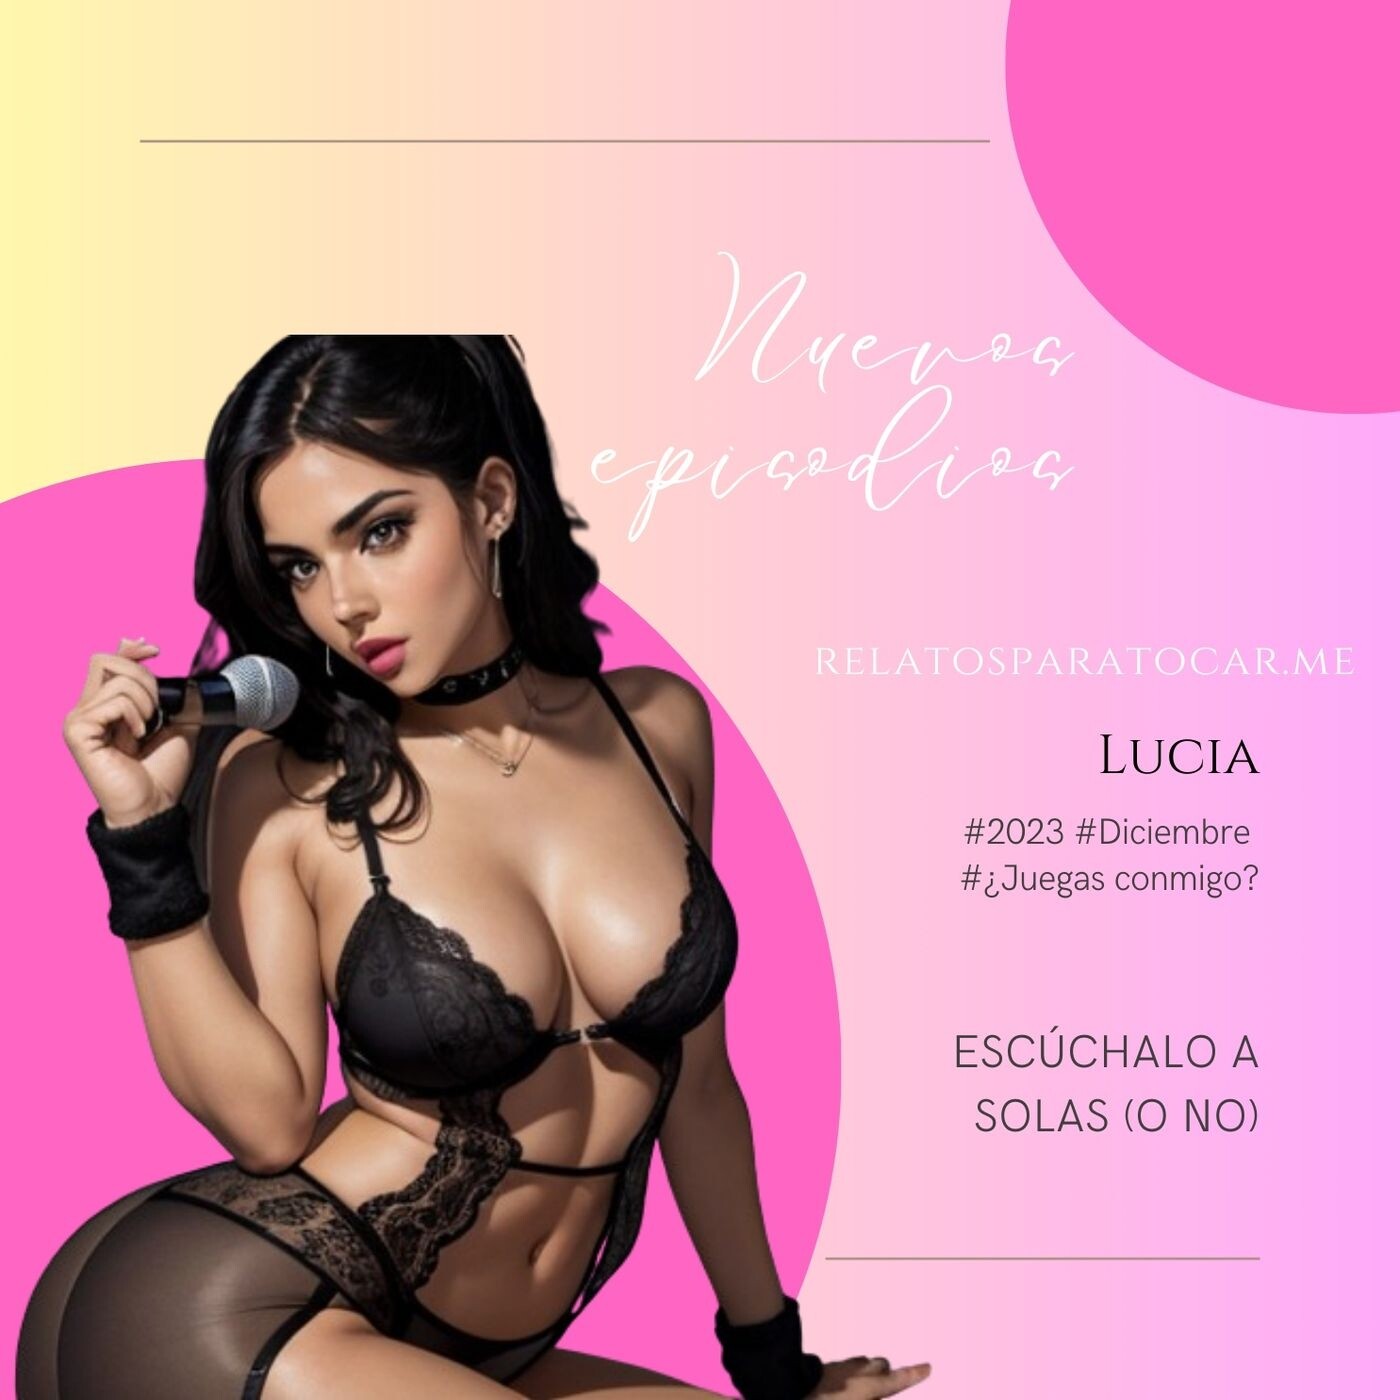 Relatos Eroticos Con La Voz De Tus Fantasias Podcast Listen Chartable